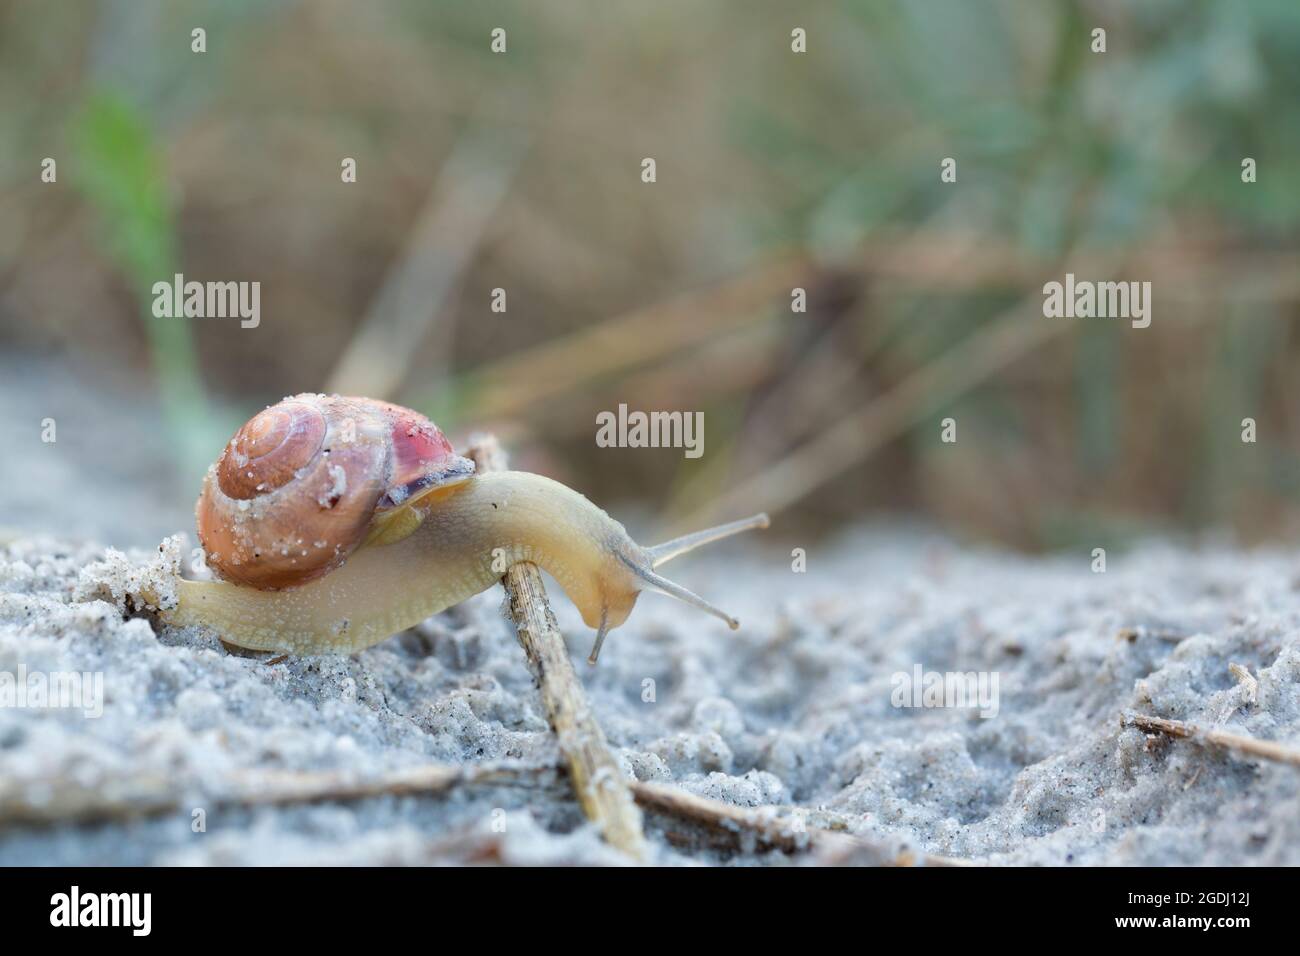 Una lumaca leggermente trasparente supera un peduncolo nella sabbia con la sua casa marrone sul retro. Foto Stock